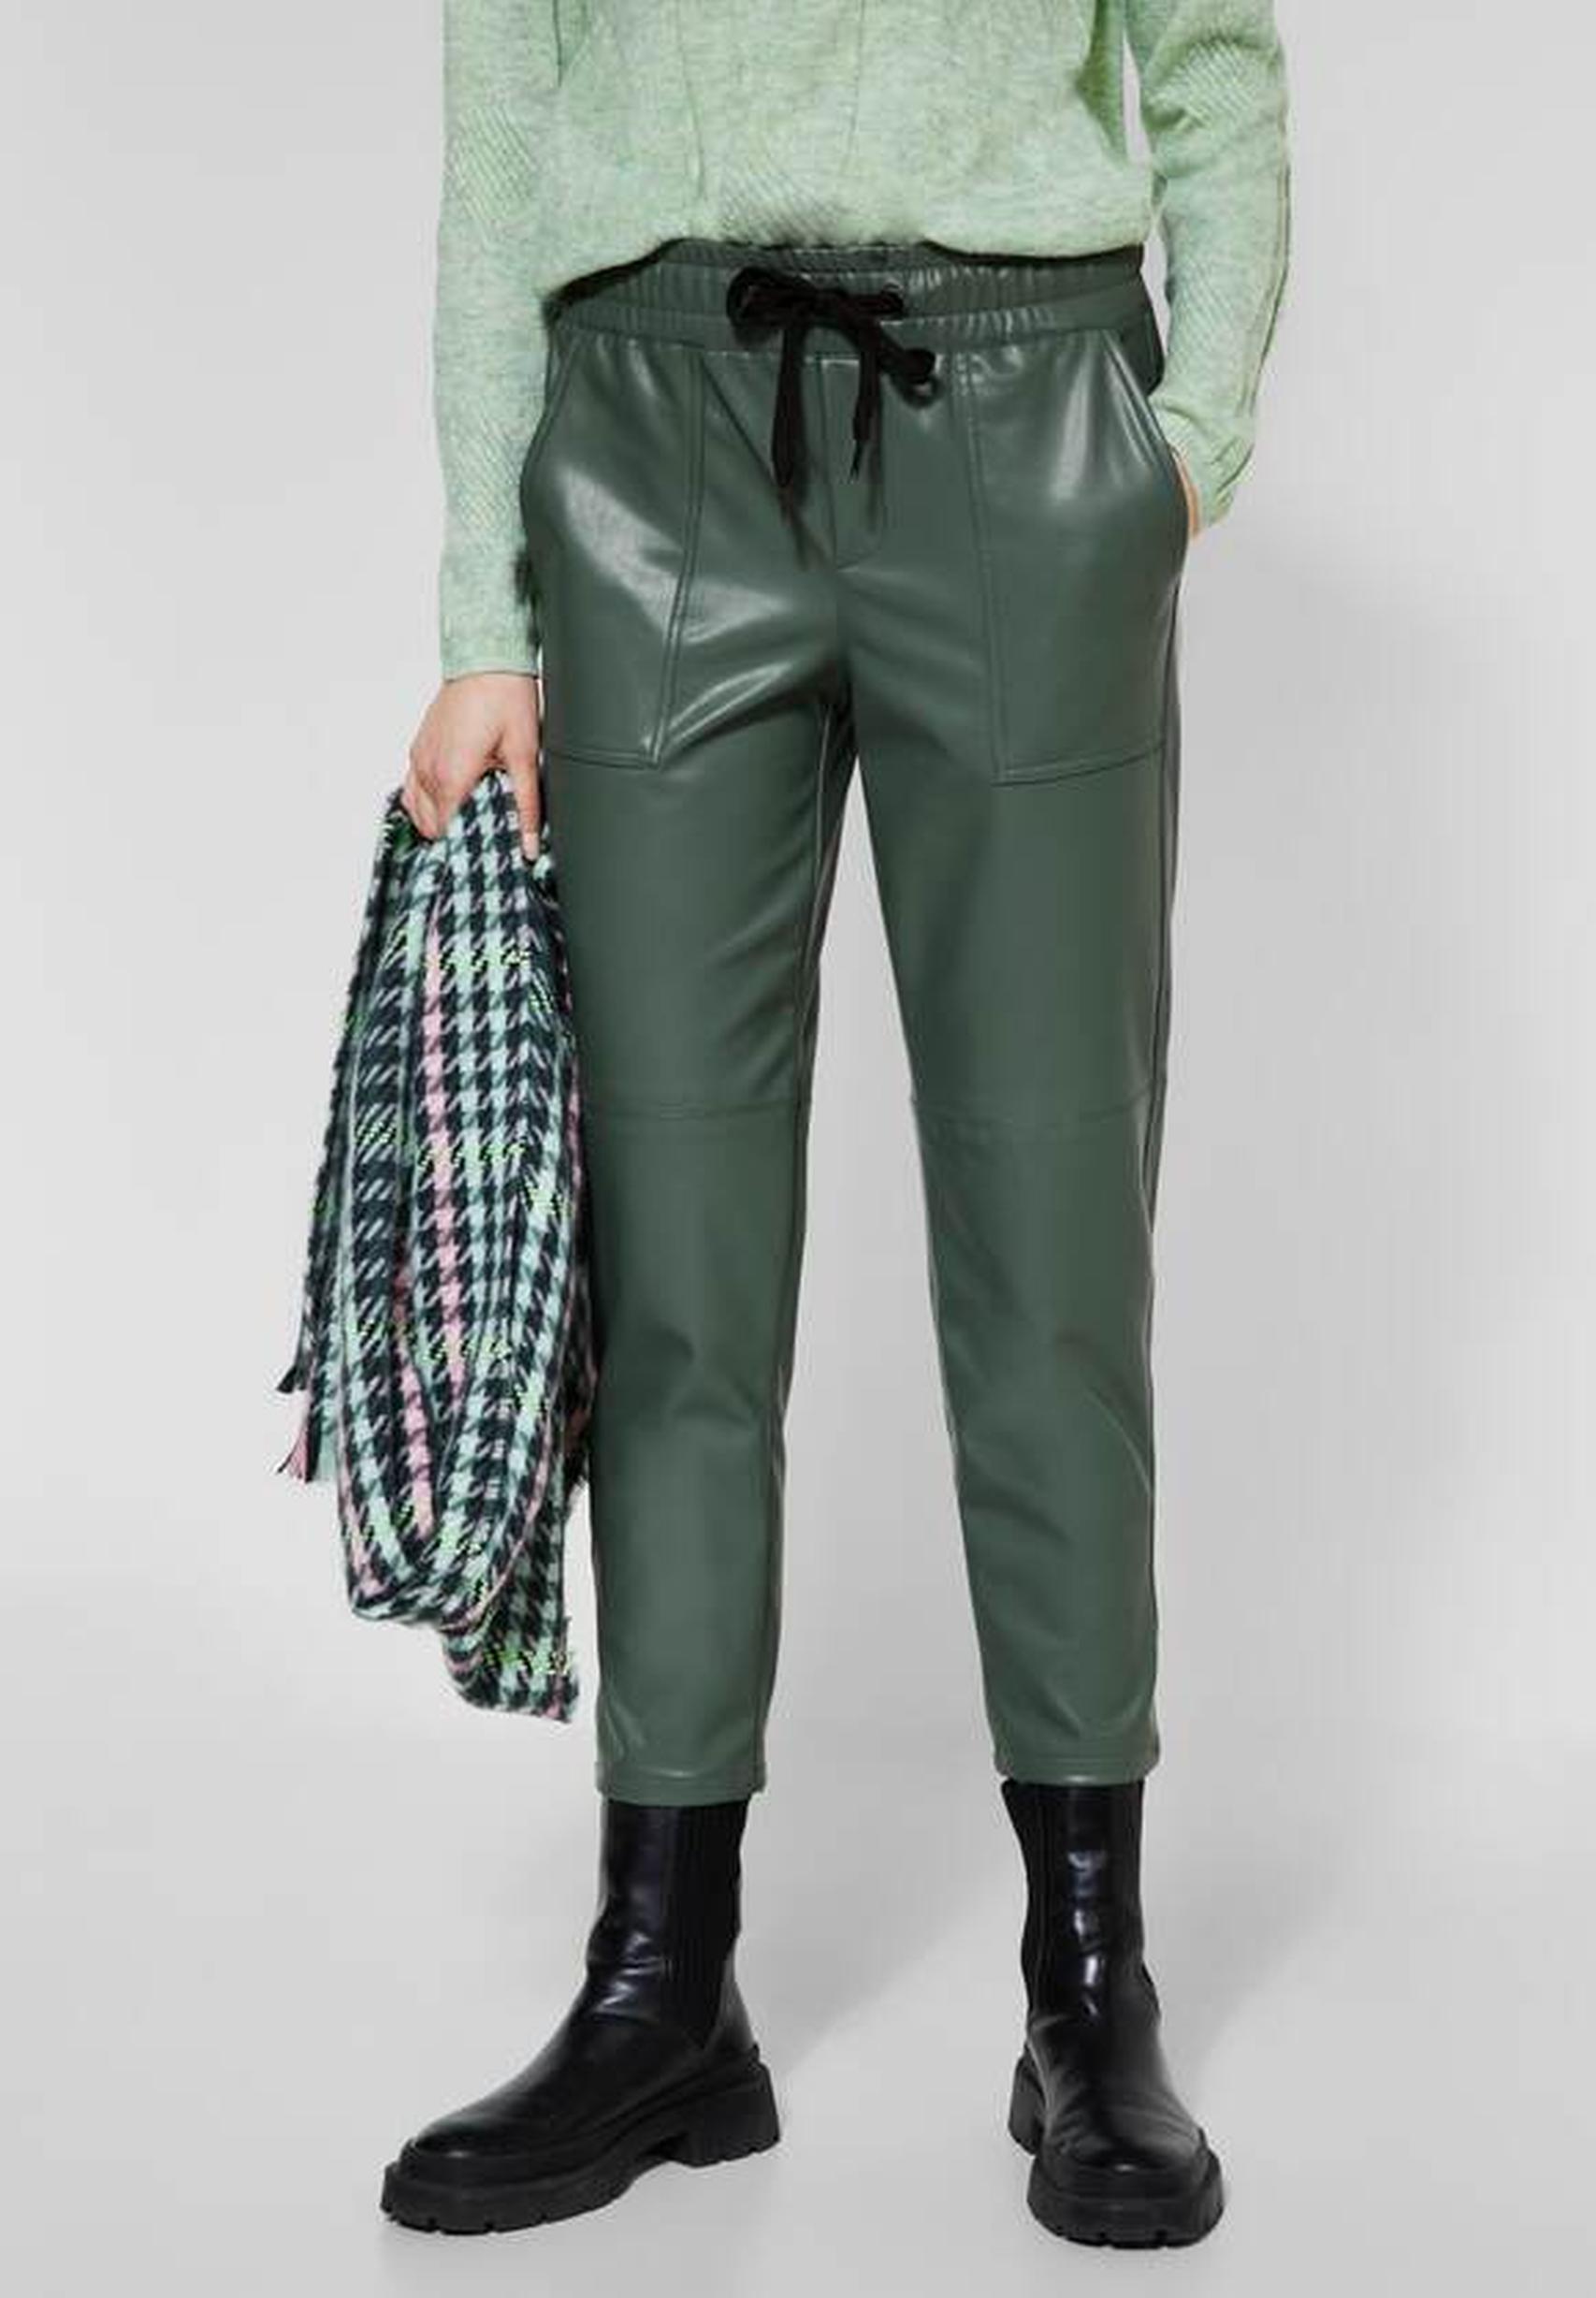 Trendige Lederimitat-Hose aus clary - von Kollektion dark mint Street in der One 375850